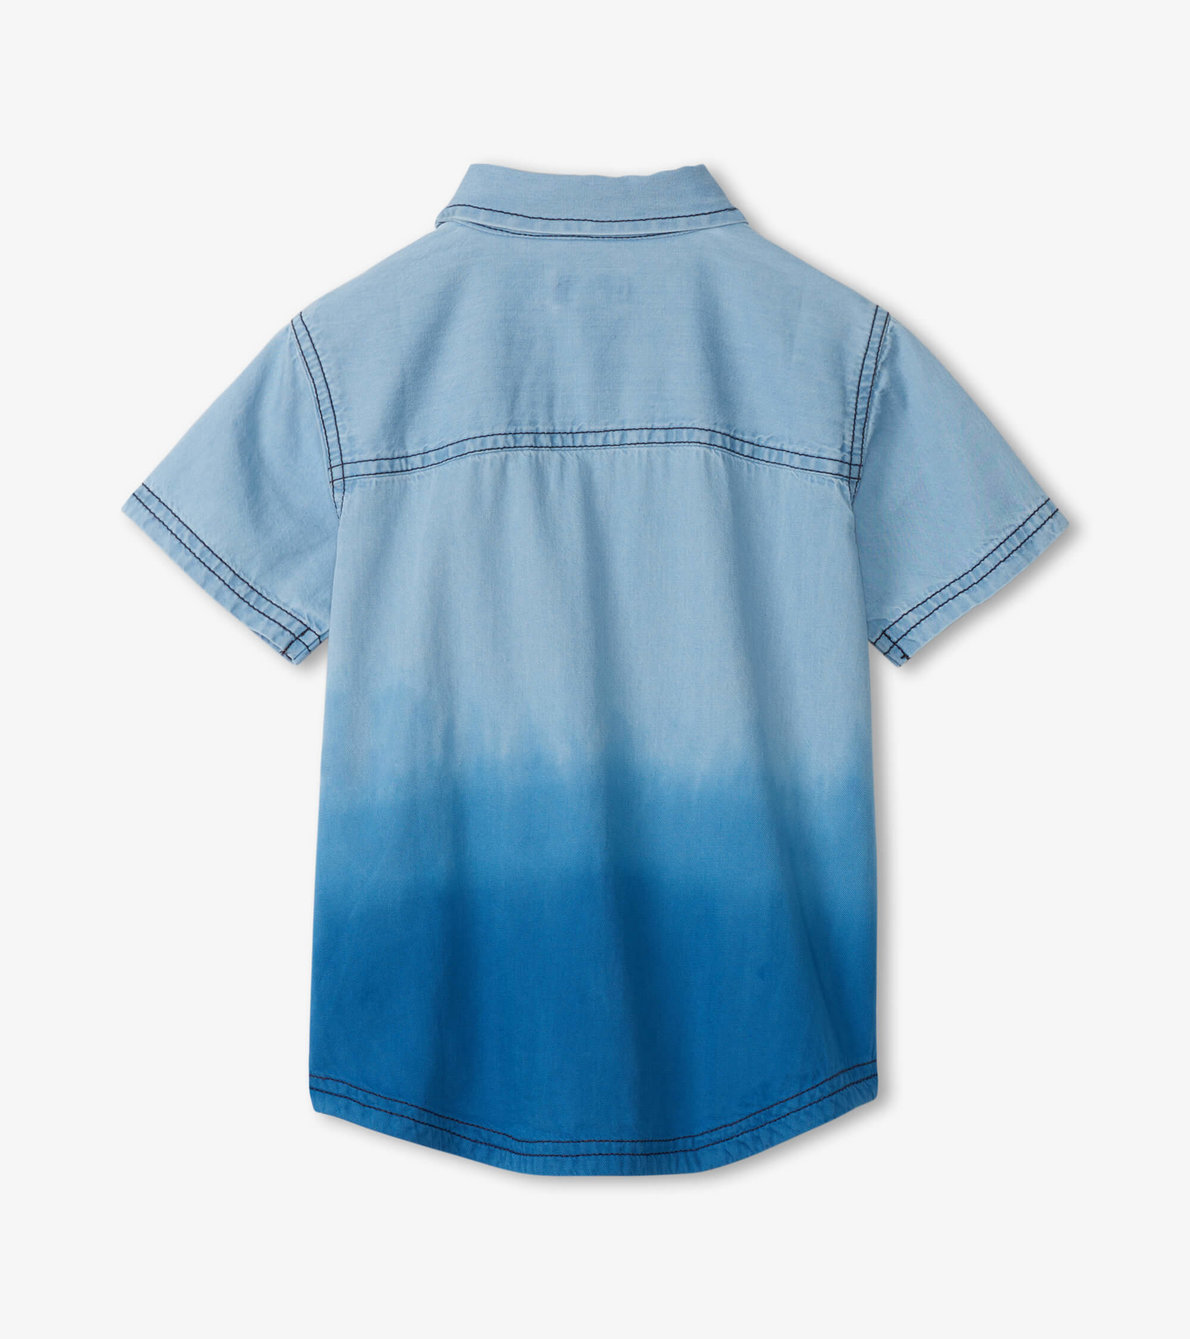 Agrandir l'image de Chemise boutonnée à manches courtes – Nuances bleu denim teintes par immersion